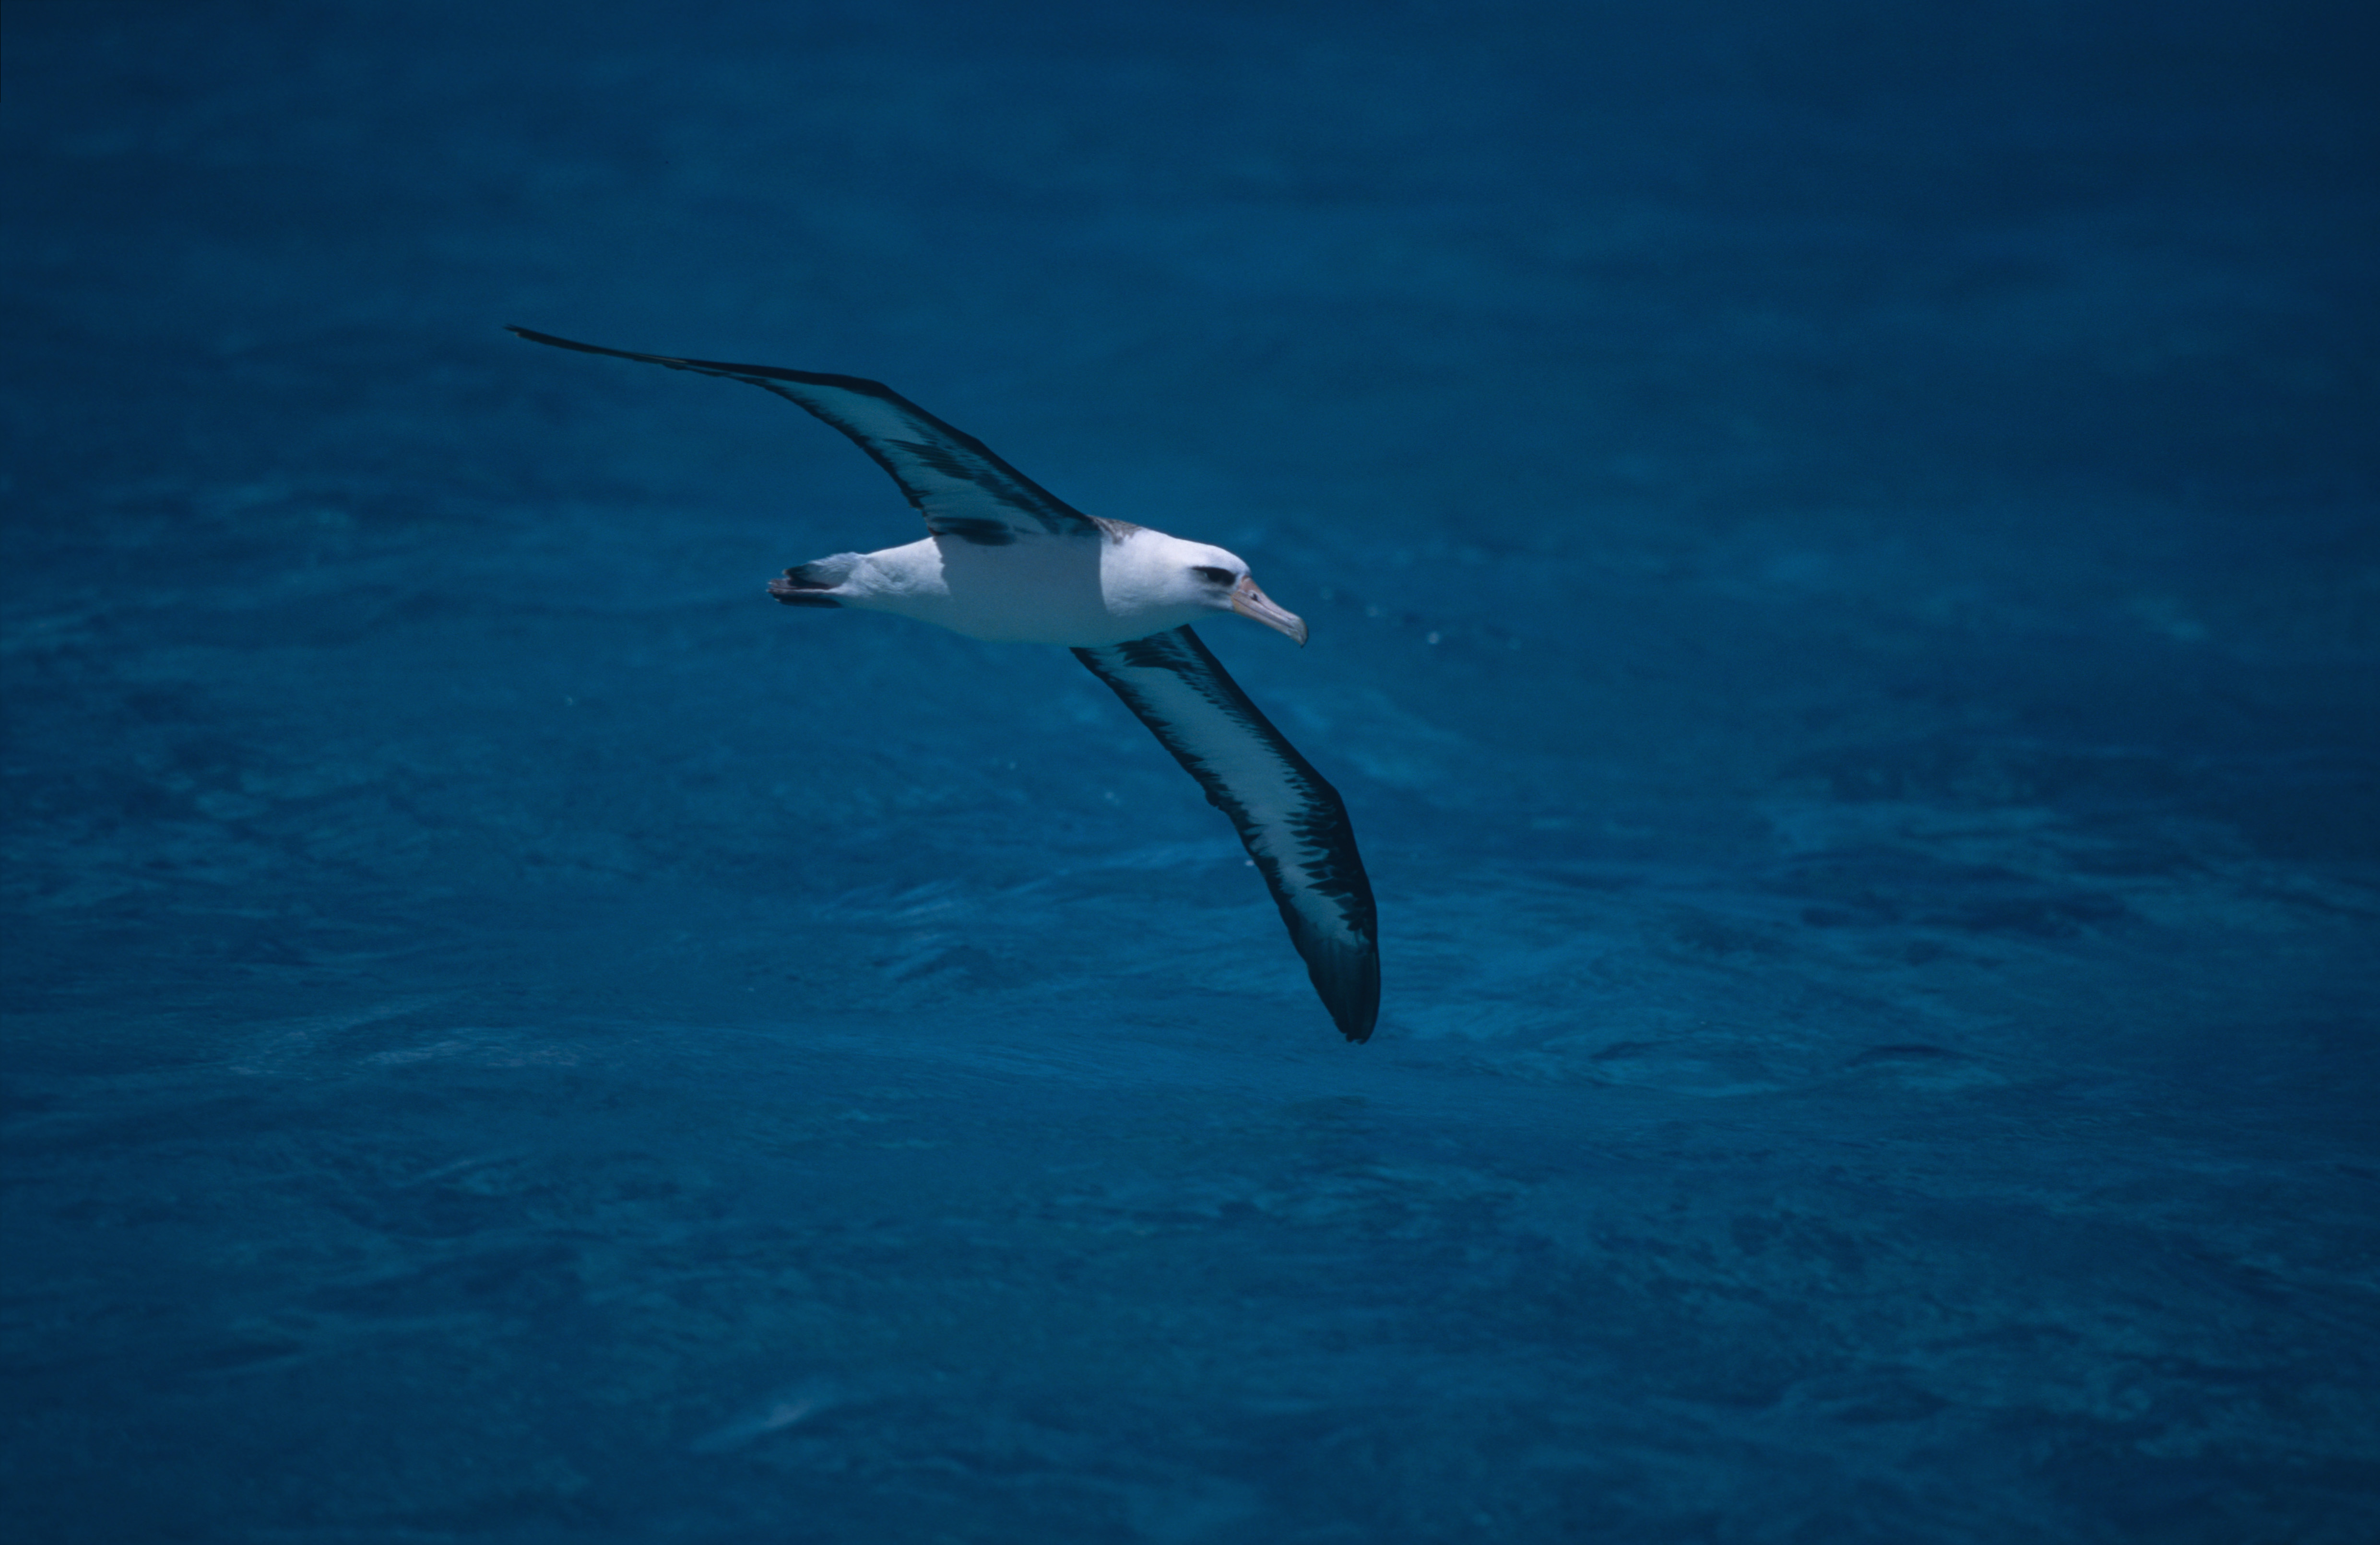 Fliegender Laysan-Albatros ueber dem Meer (00006895)